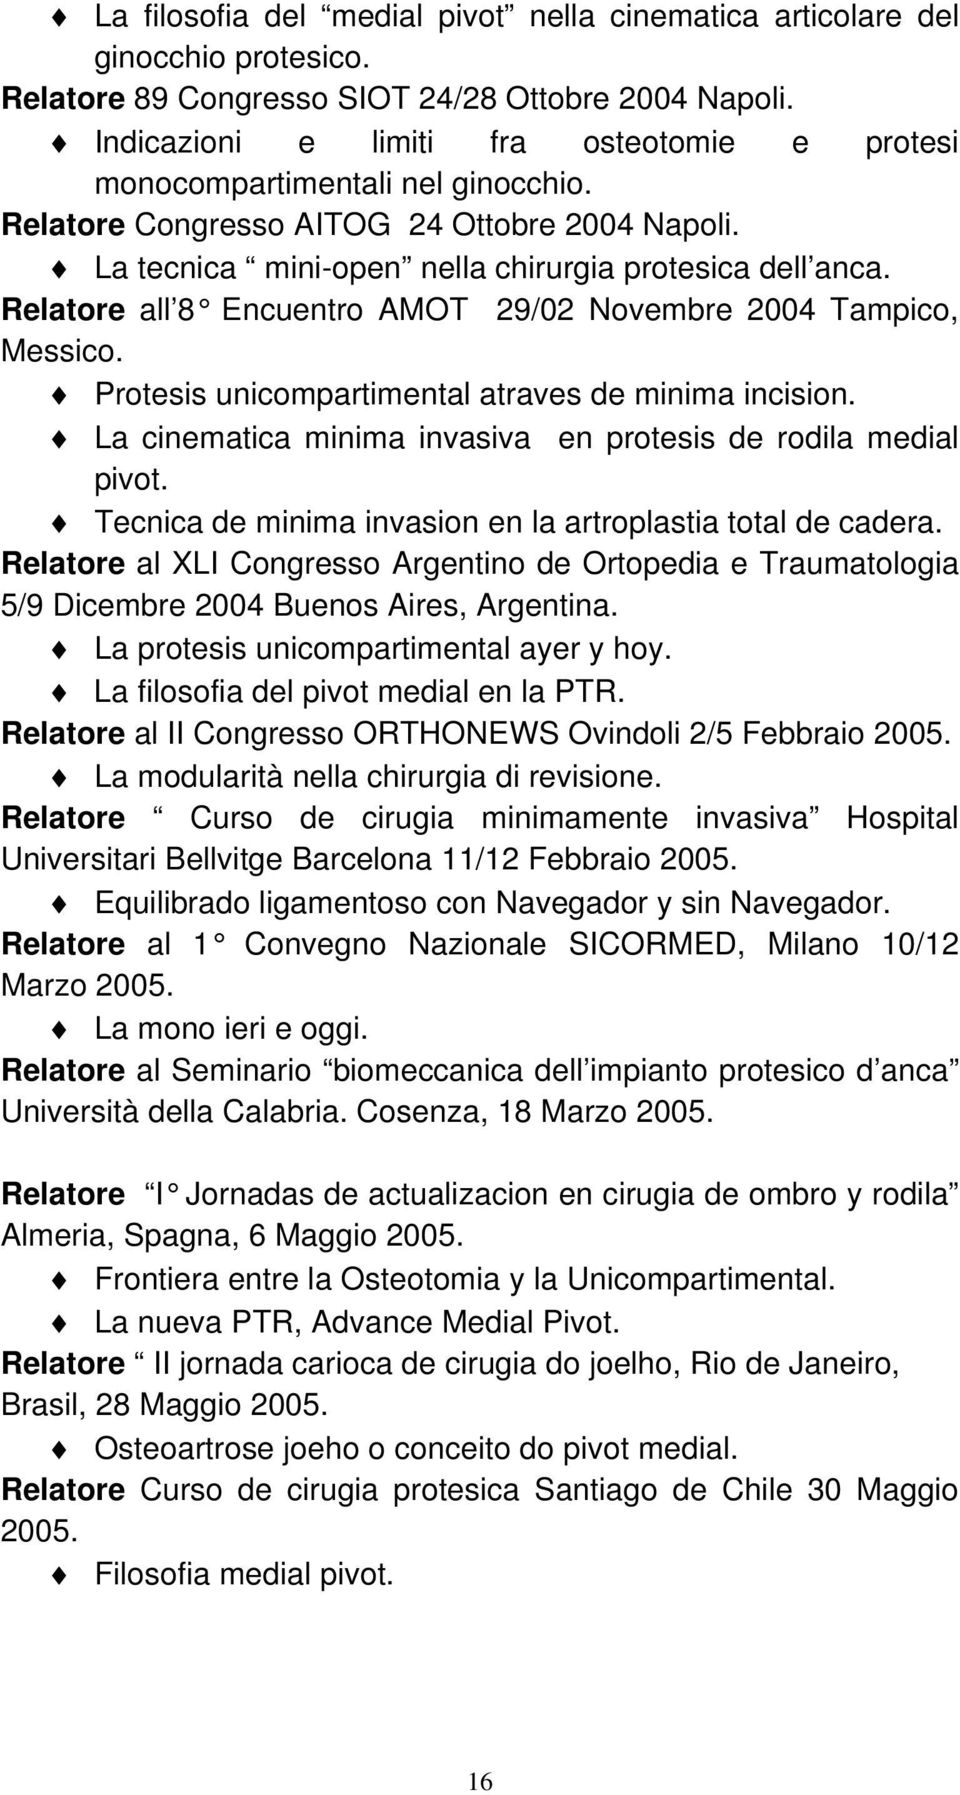 Relatore all 8 Encuentro AMOT 29/02 Novembre 2004 Tampico, Messico. Protesis unicompartimental atraves de minima incision. La cinematica minima invasiva en protesis de rodila medial pivot.